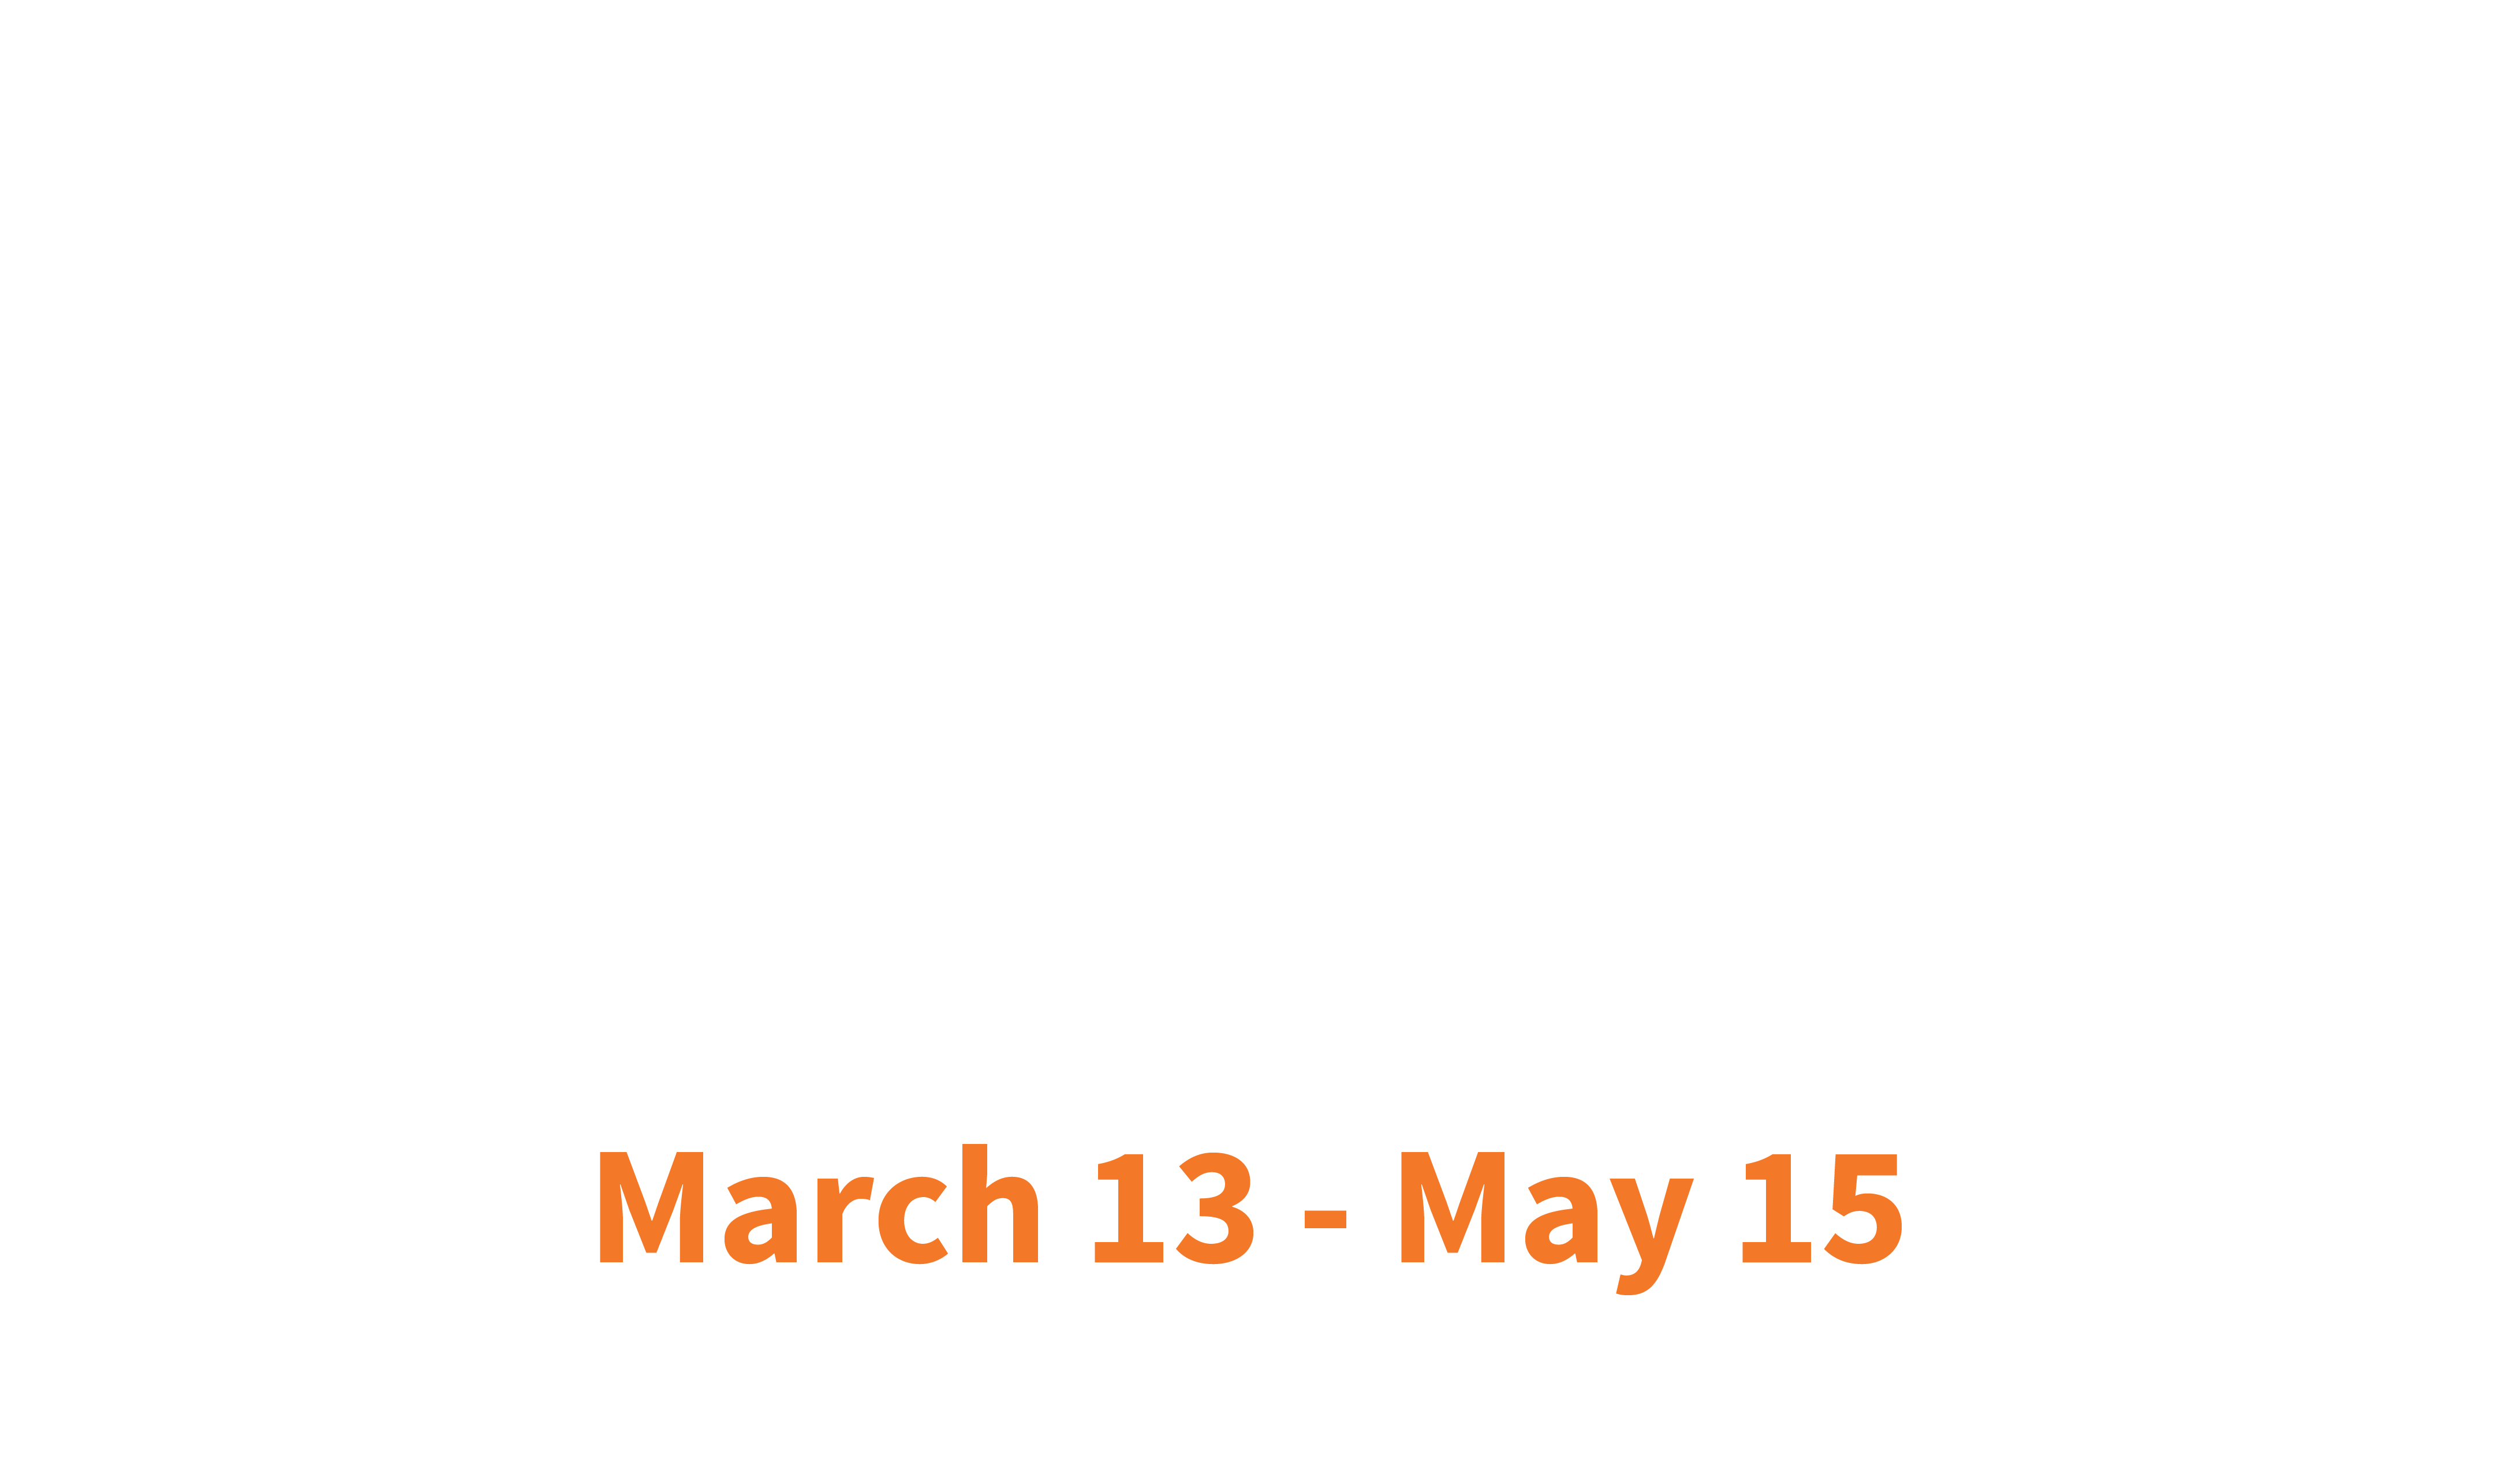 2020 ASPPH Virtual Annual Meeting